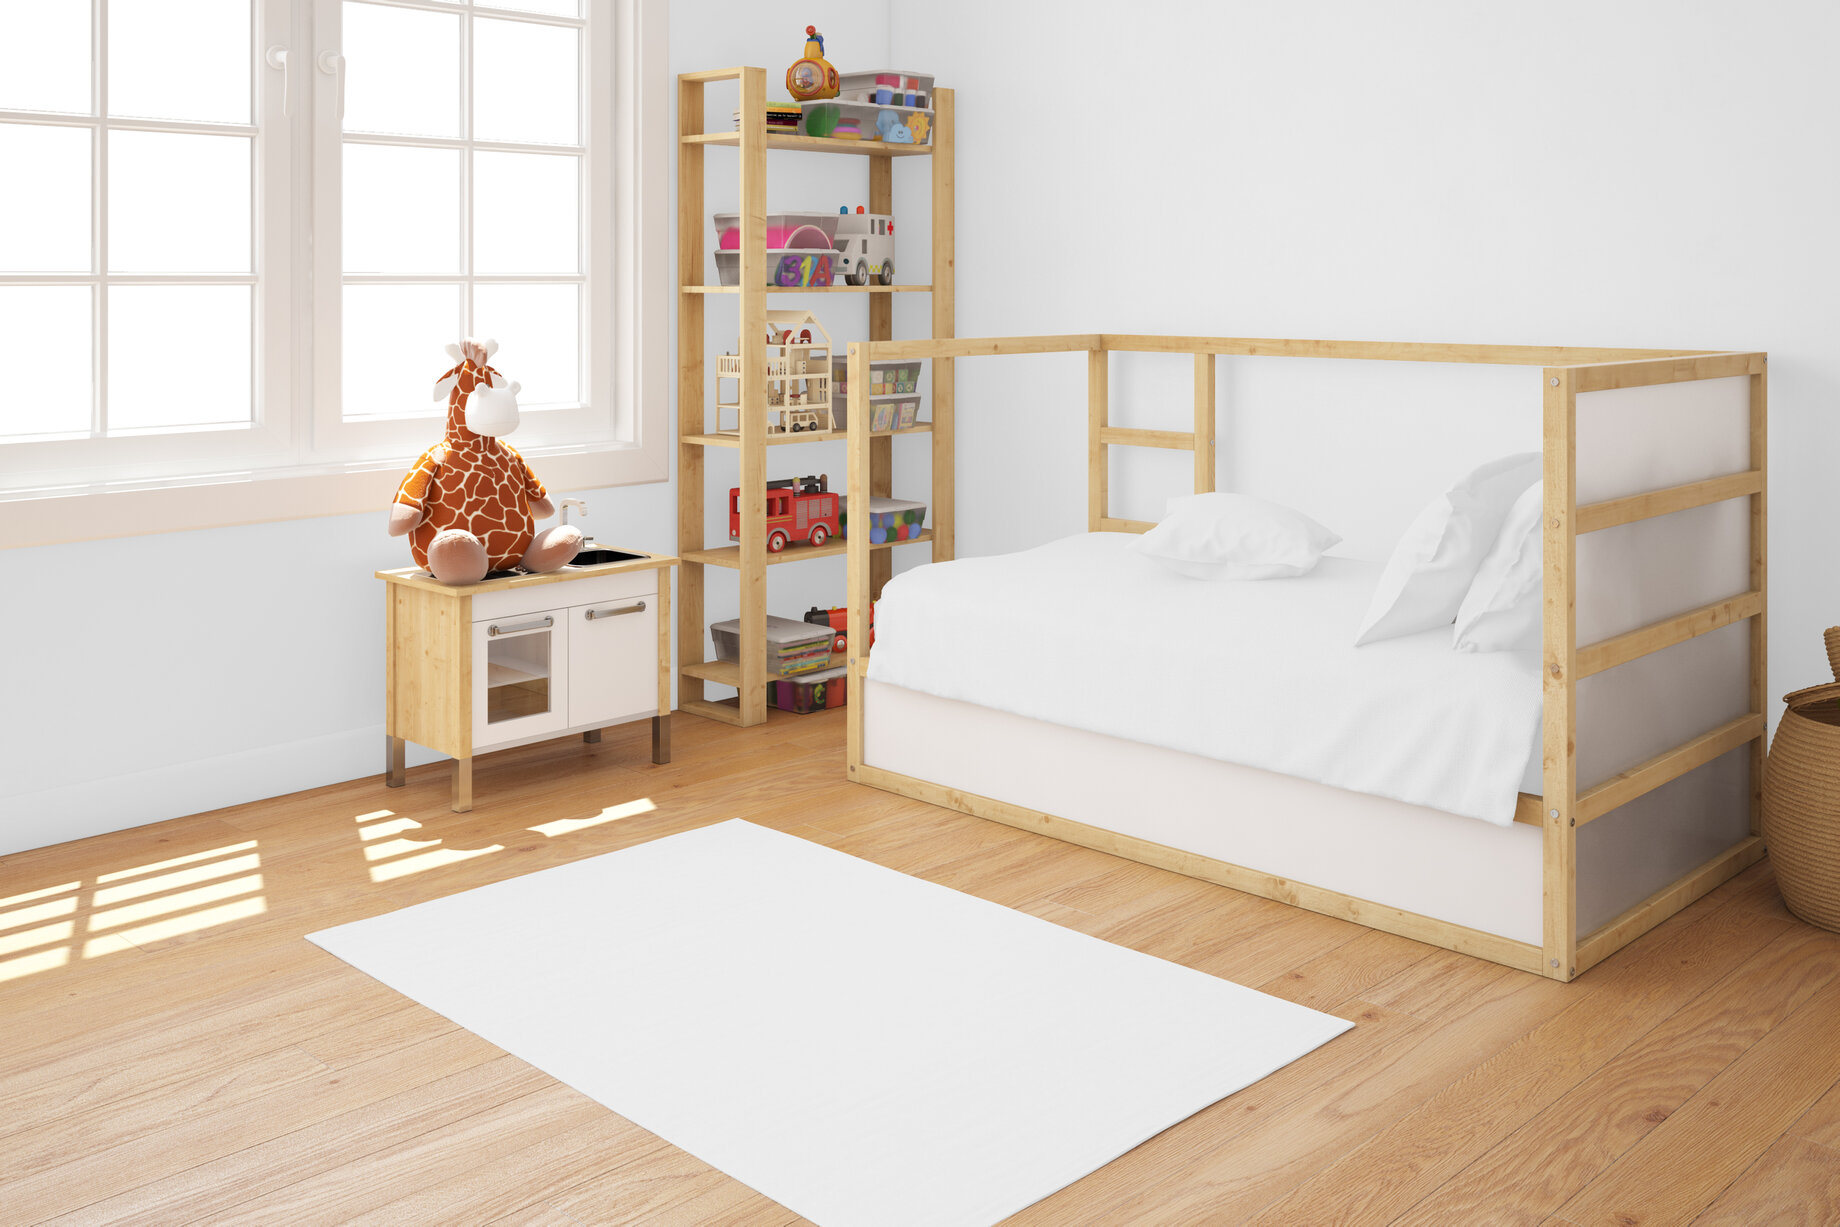 Štýlová detská posteľ z masívneho dreva, doplnená o bielu posteľnú bielizeň a bočné zábrany s rebríkom a plastovými komponentmi v zadnej časti postele 